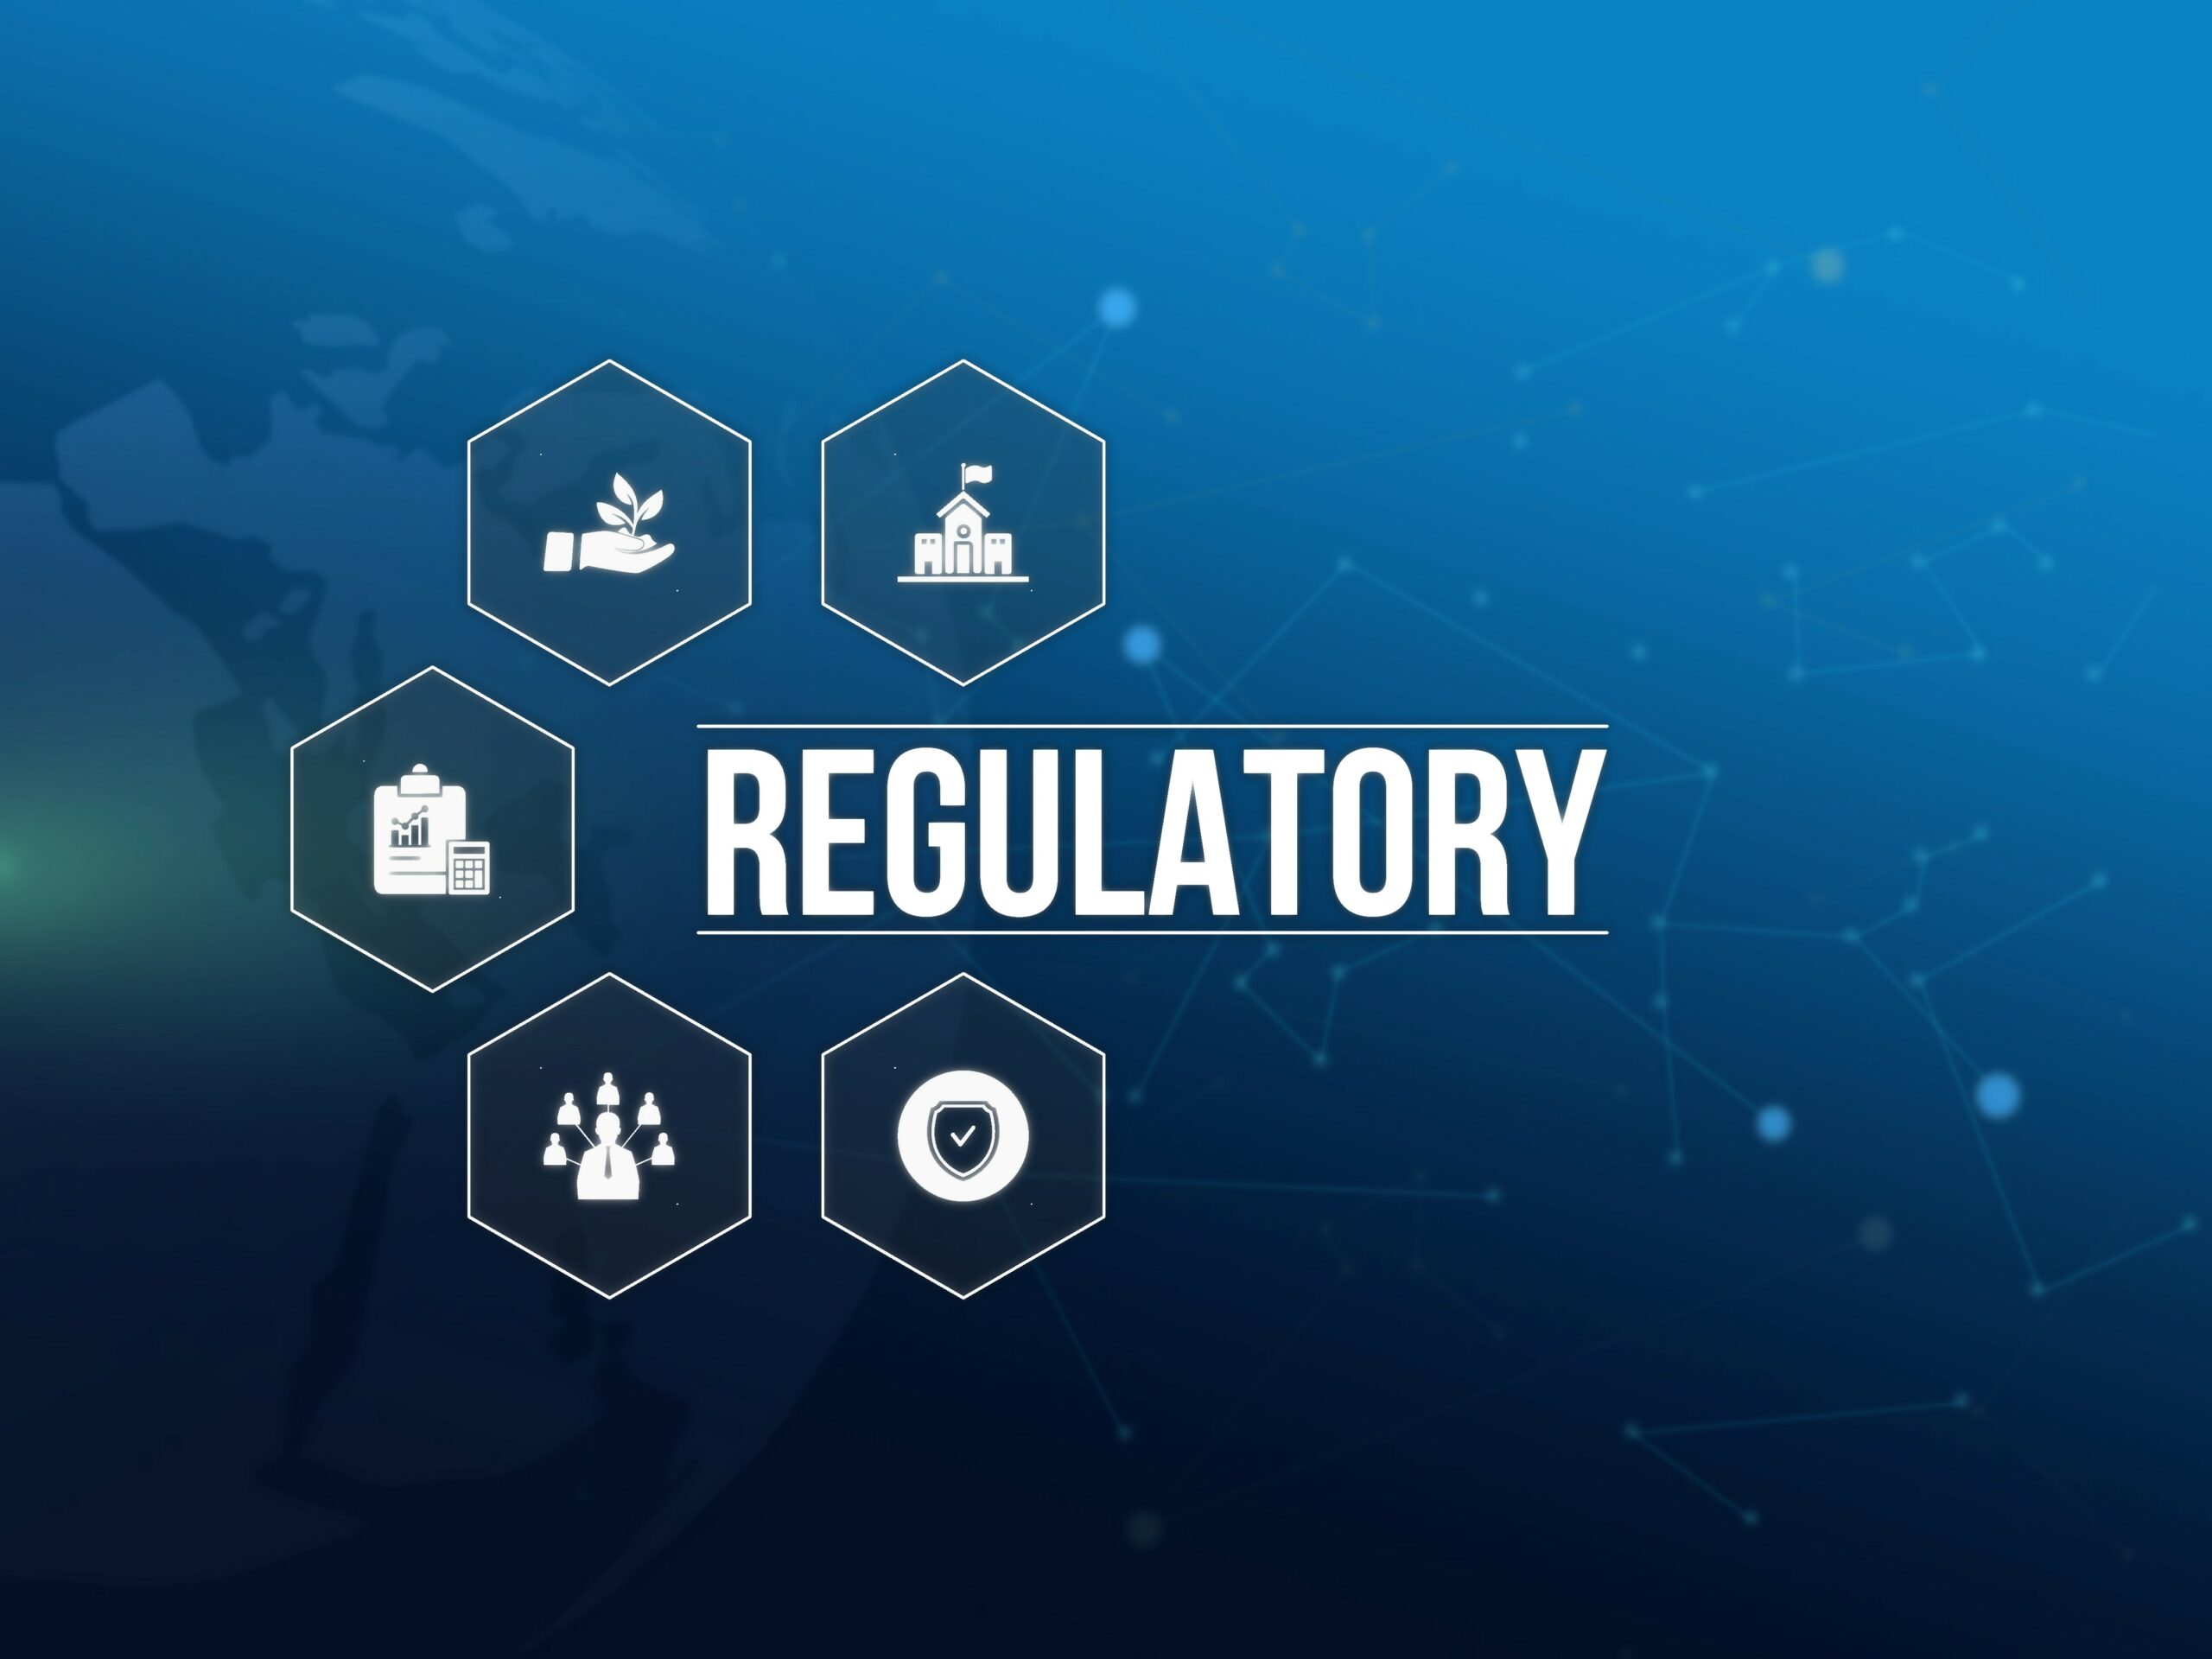 Regulatory Image